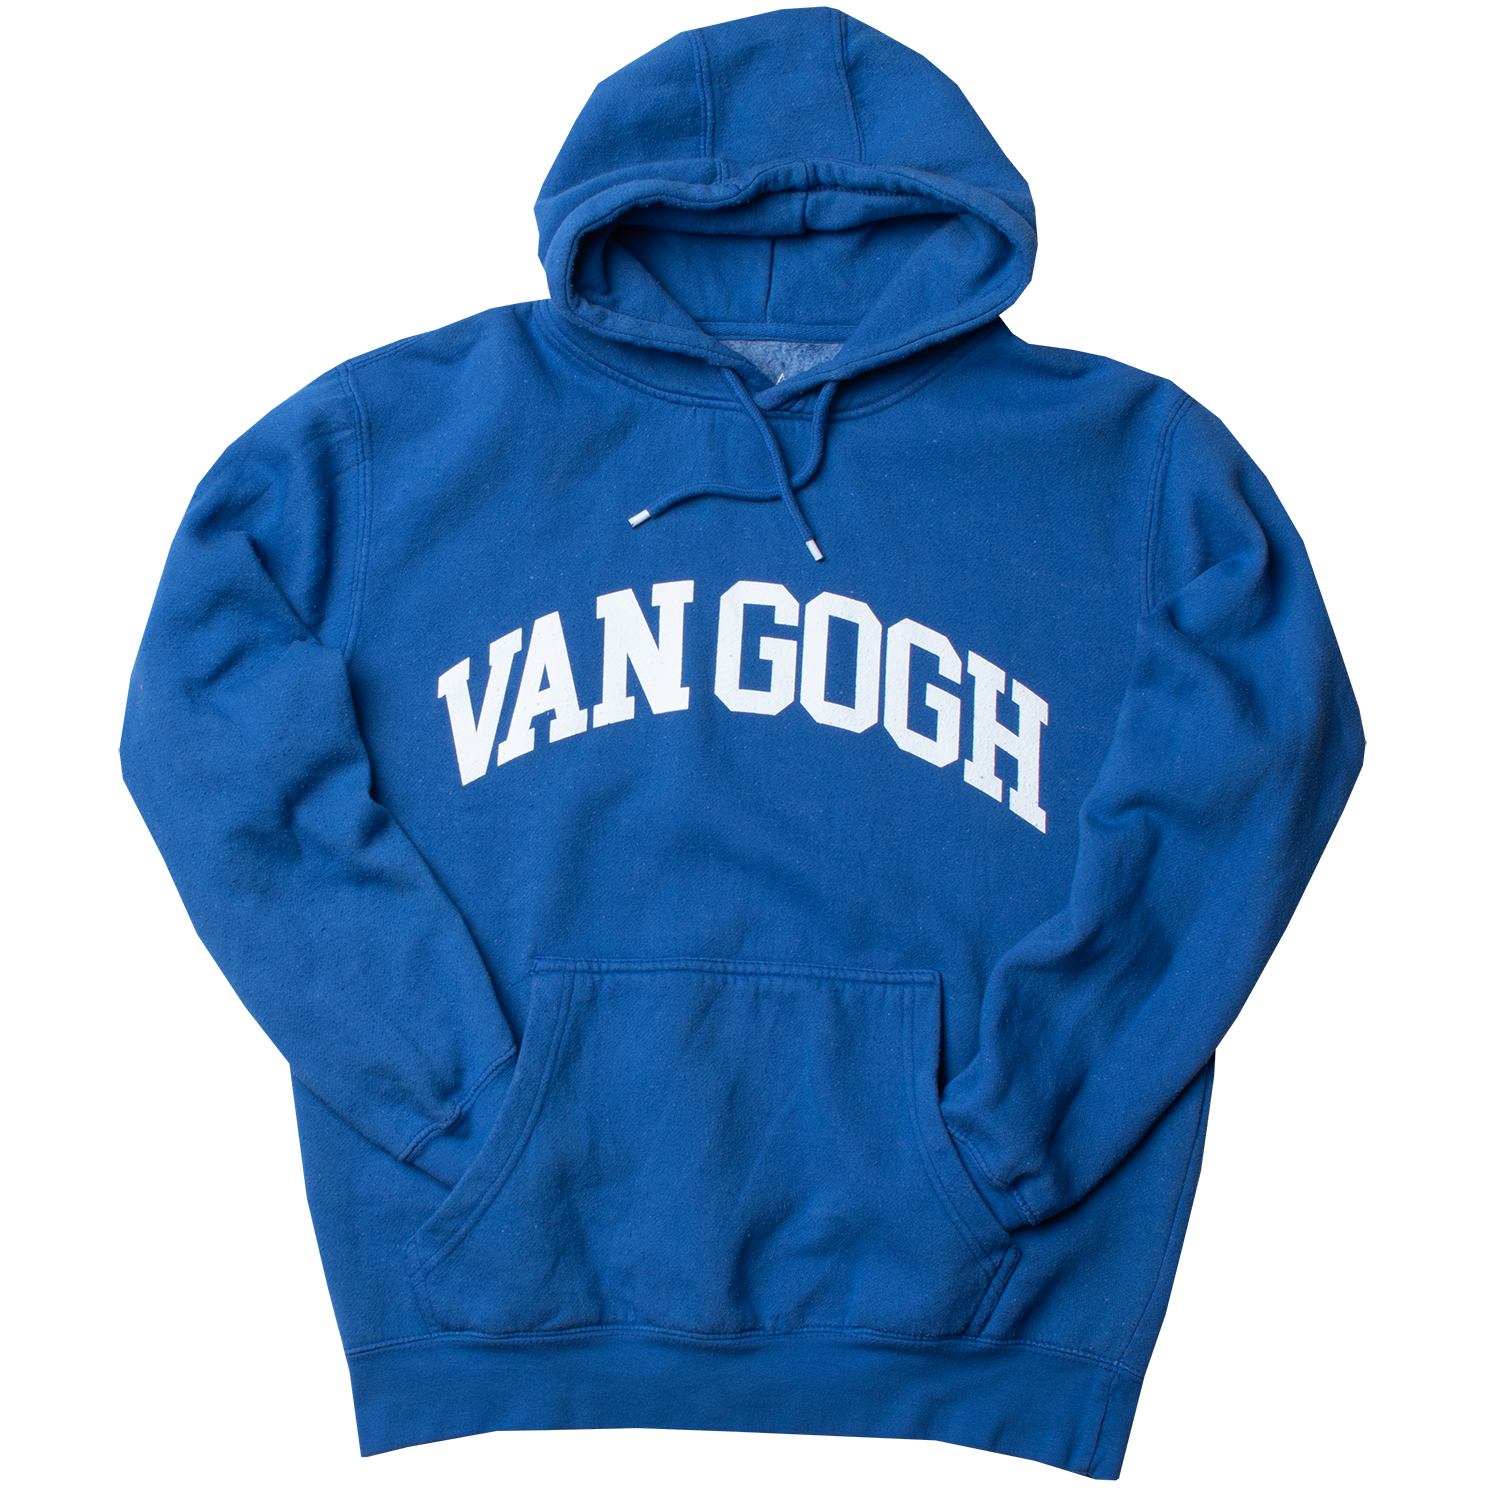 Van Gogh artist blue mens hoodie by altru apparel front